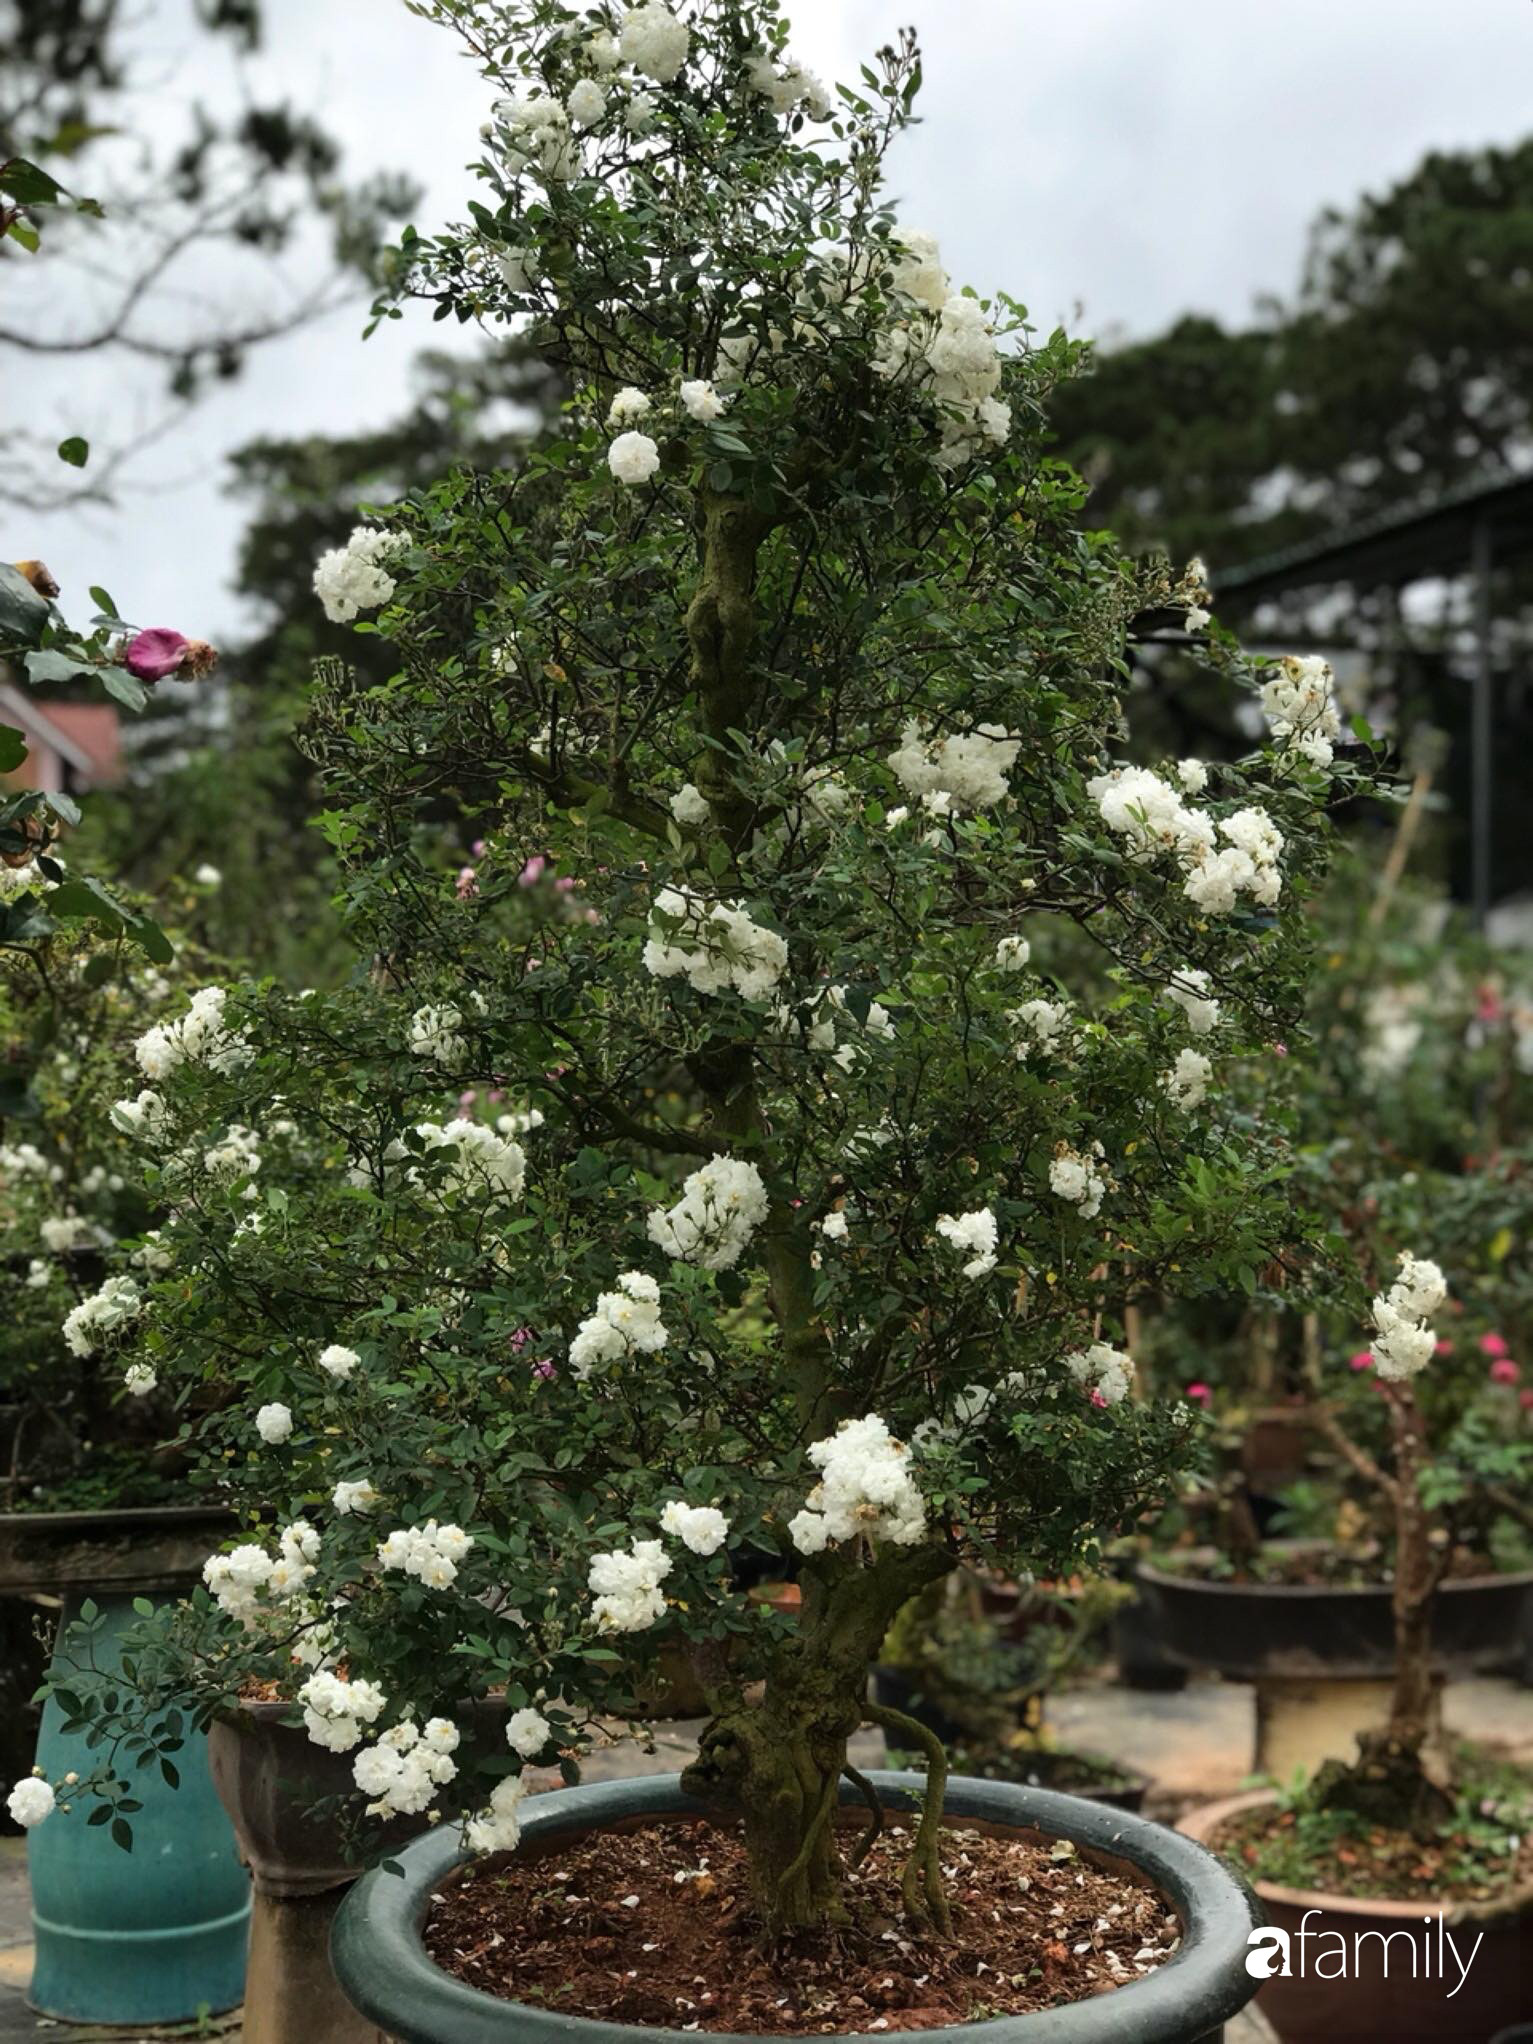 Ngắm vườn hồng bonsai tiền tỉ rực rỡ tỏa hương trên đồi núi ở Đà Lạt - Ảnh 13.